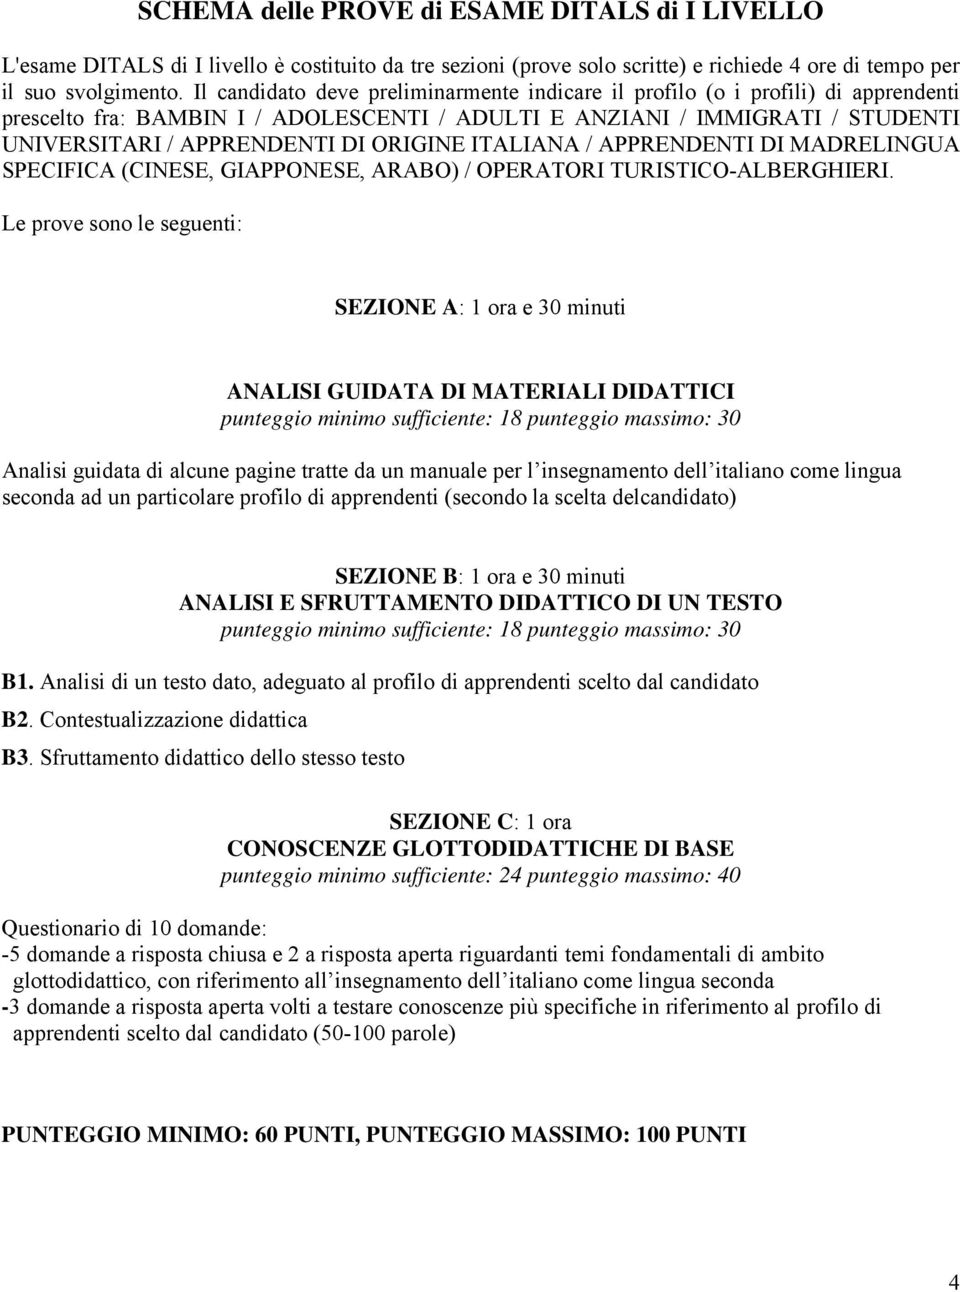 ORIGINE ITALIANA / APPRENDENTI DI MADRELINGUA SPECIFICA (CINESE, GIAPPONESE, ARABO) / OPERATORI TURISTICO-ALBERGHIERI.